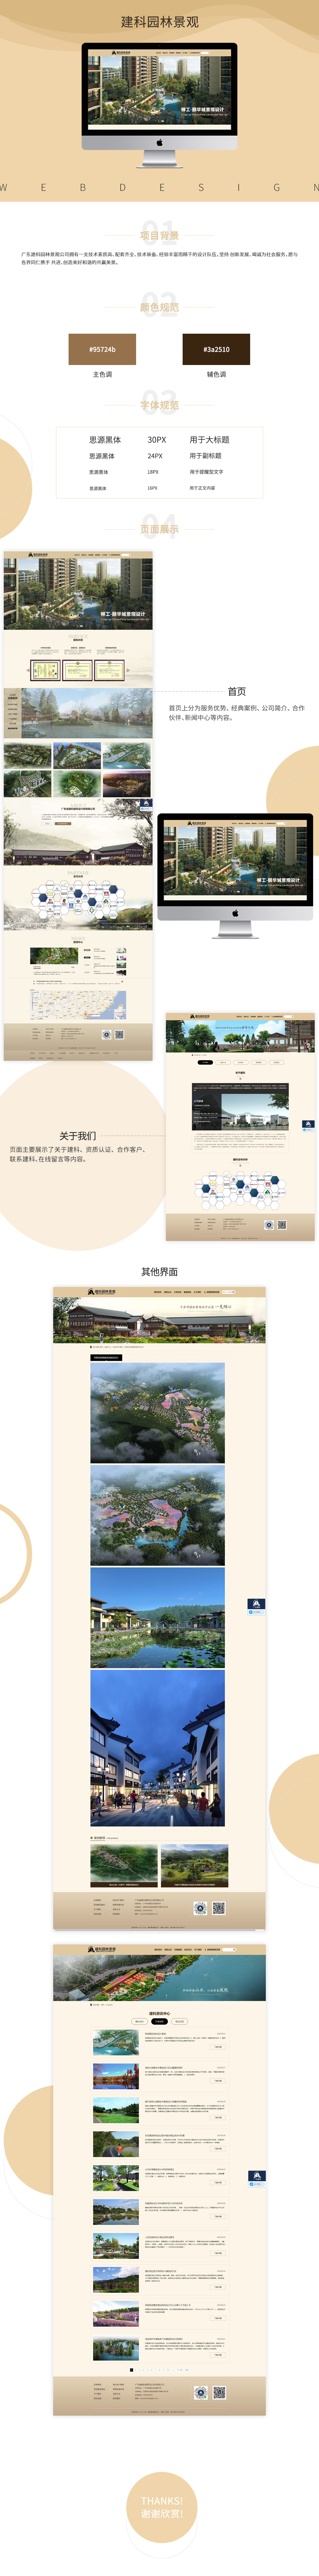 广东省建科建筑设计院有限企业网站案例